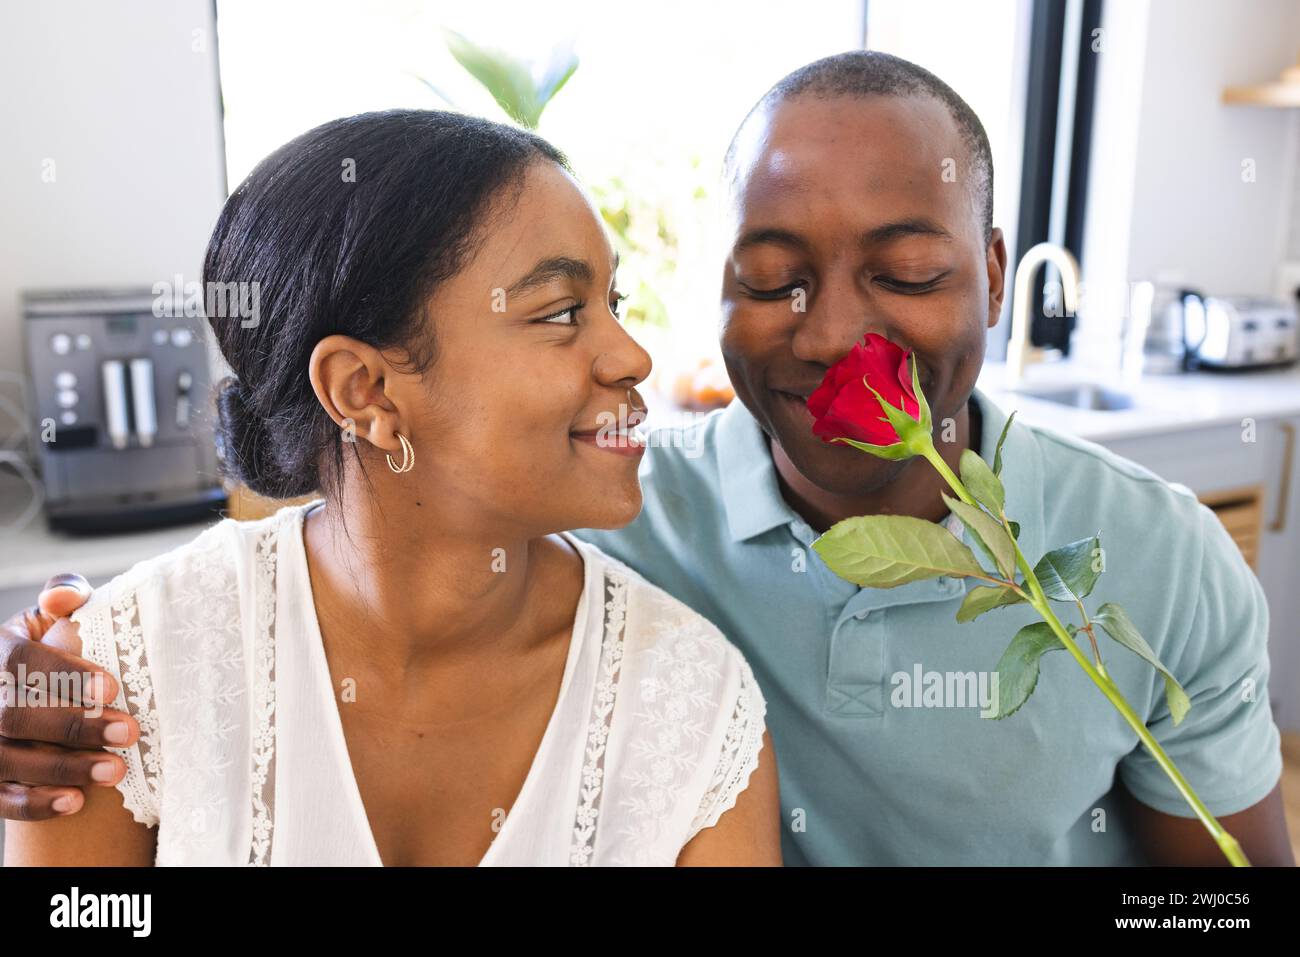 Ein junger afroamerikanischer Mann überrascht die birassische Frau mit einer Rose zu Hause Stockfoto